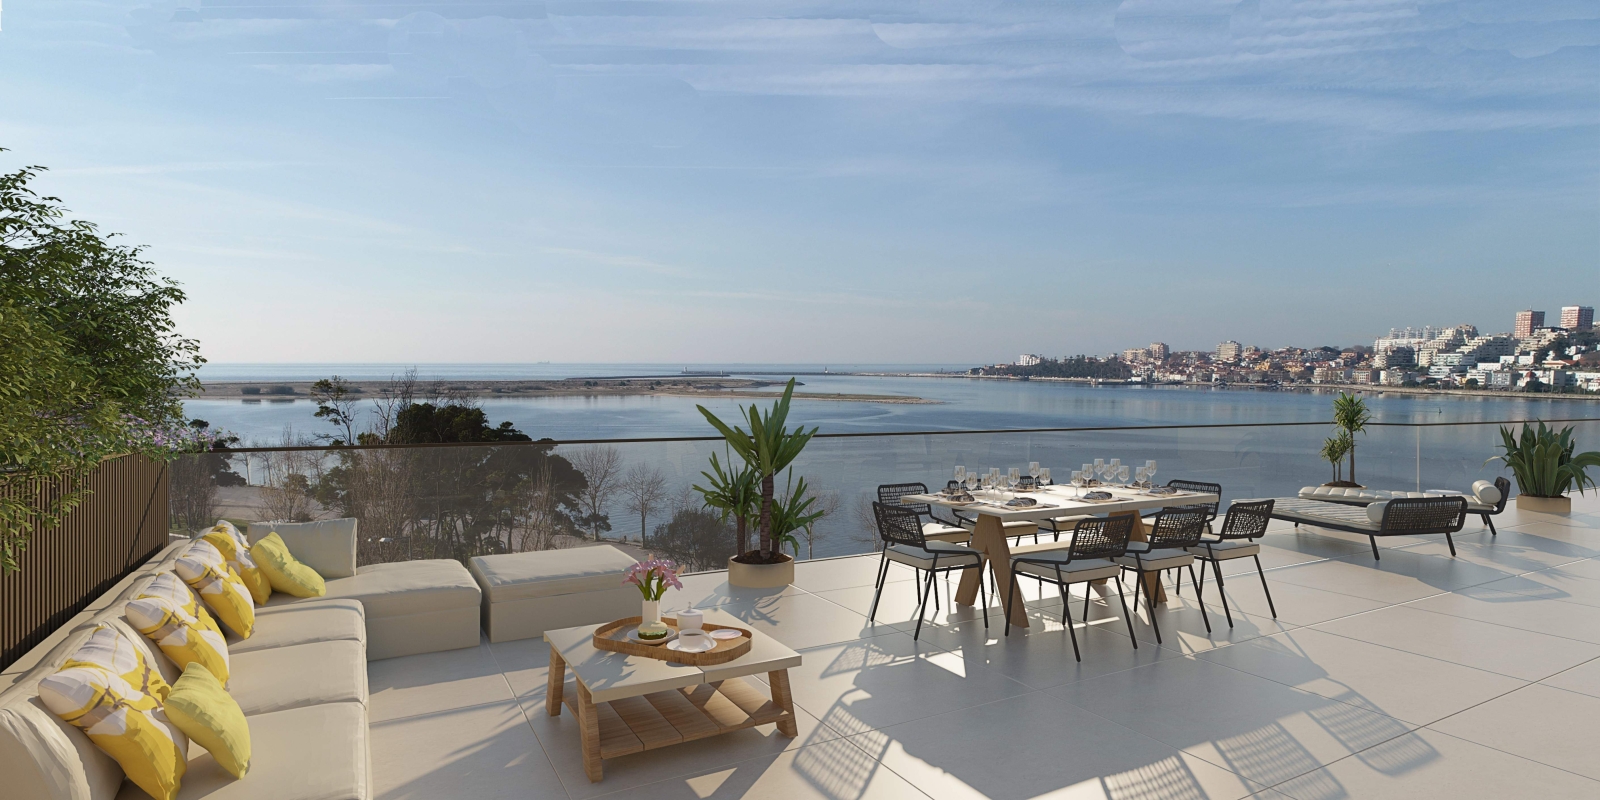 Piso en venta con terraza, en exclusivo condominio, V. N. Gaia, Porto, Portugal_175684